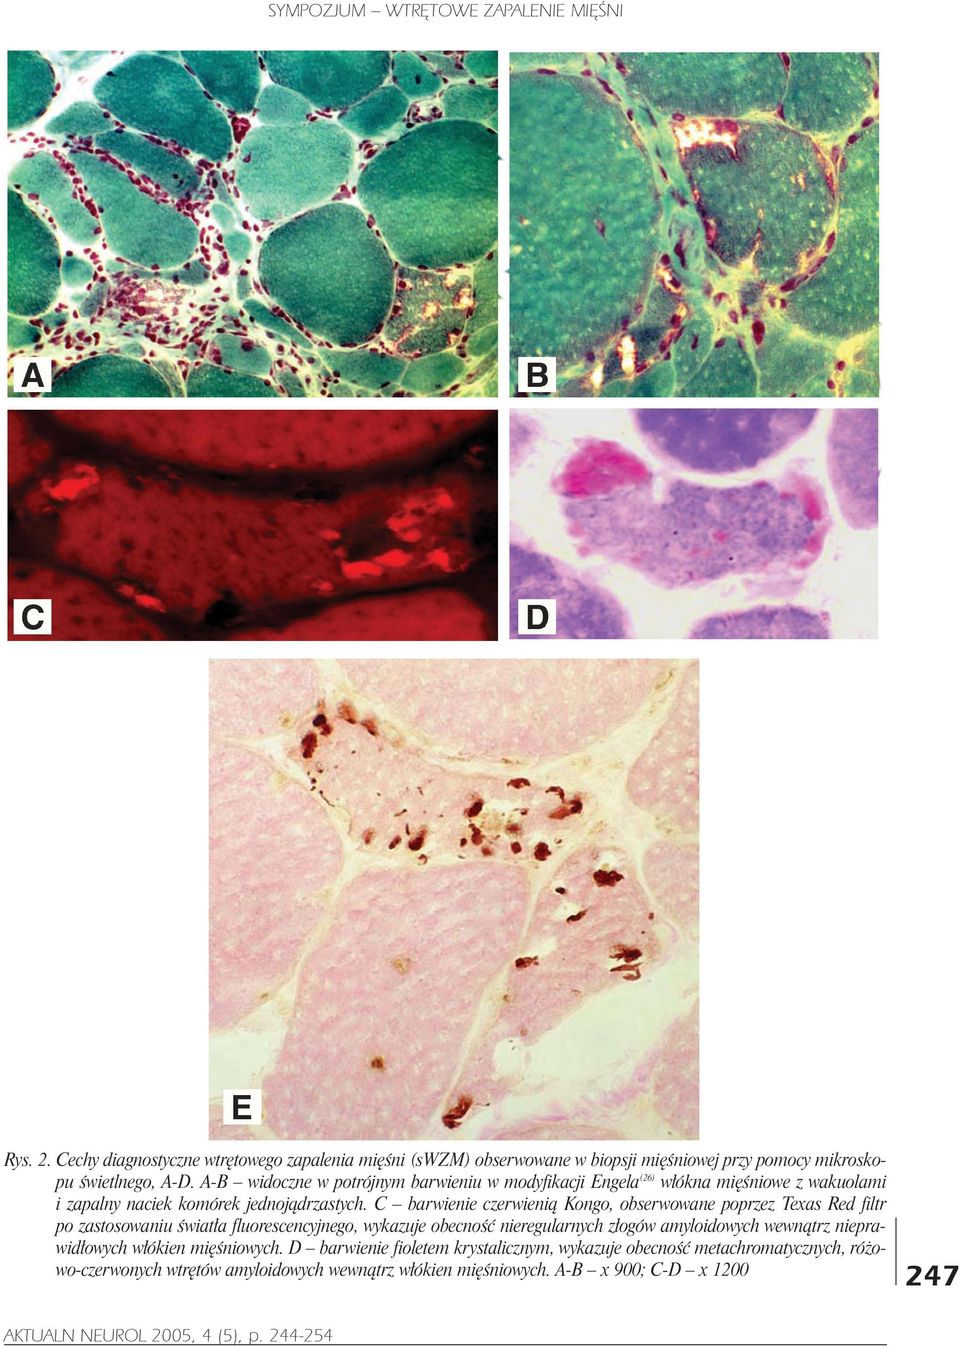 A-B widoczne w potrójnym barwieniu w modyfikacji Engela(26) w³ókna miêœniowe z wakuolami i zapalny naciek komórek jednoj¹drzastych.